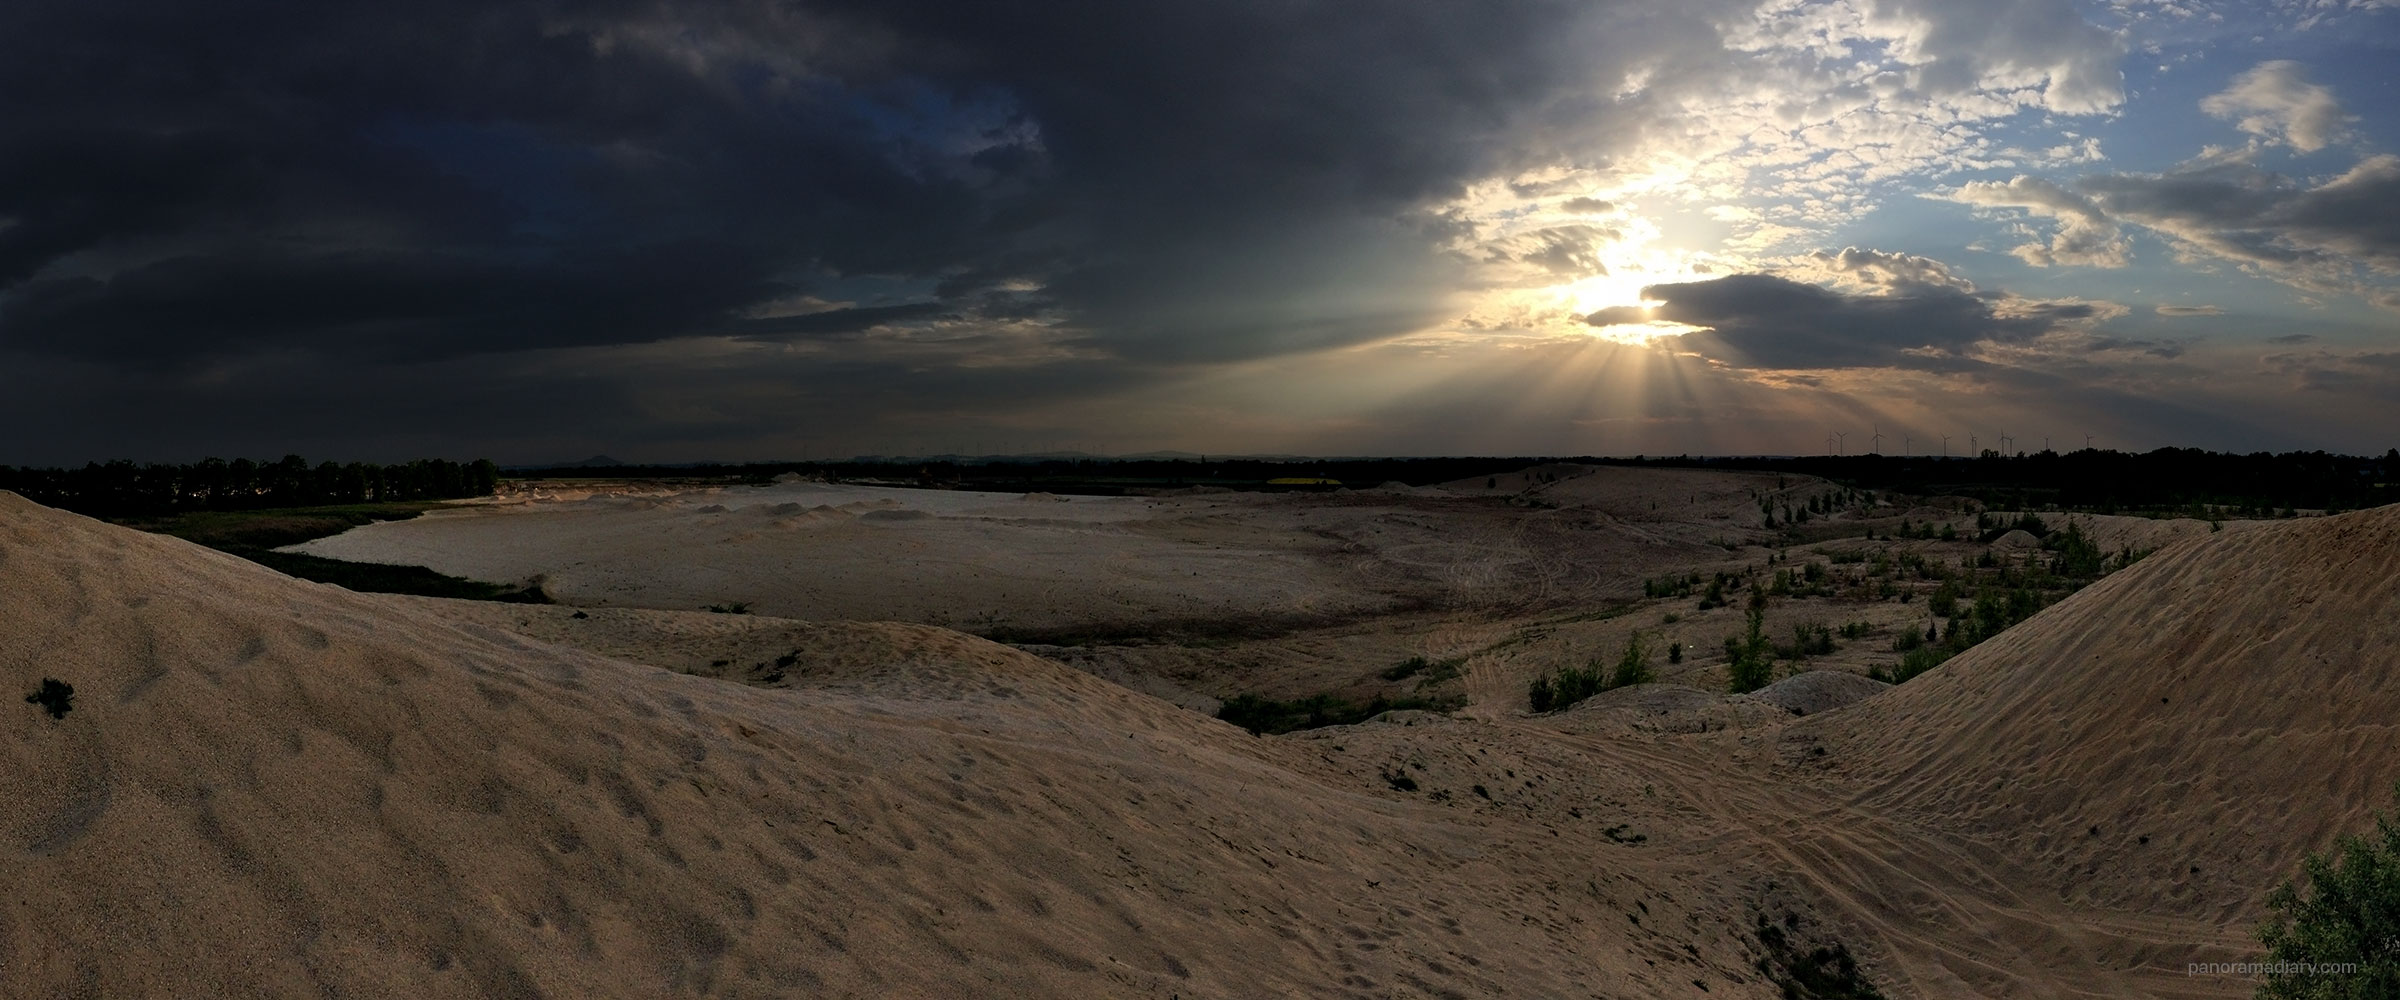 PANORAMA DIARY | Sunset over desert